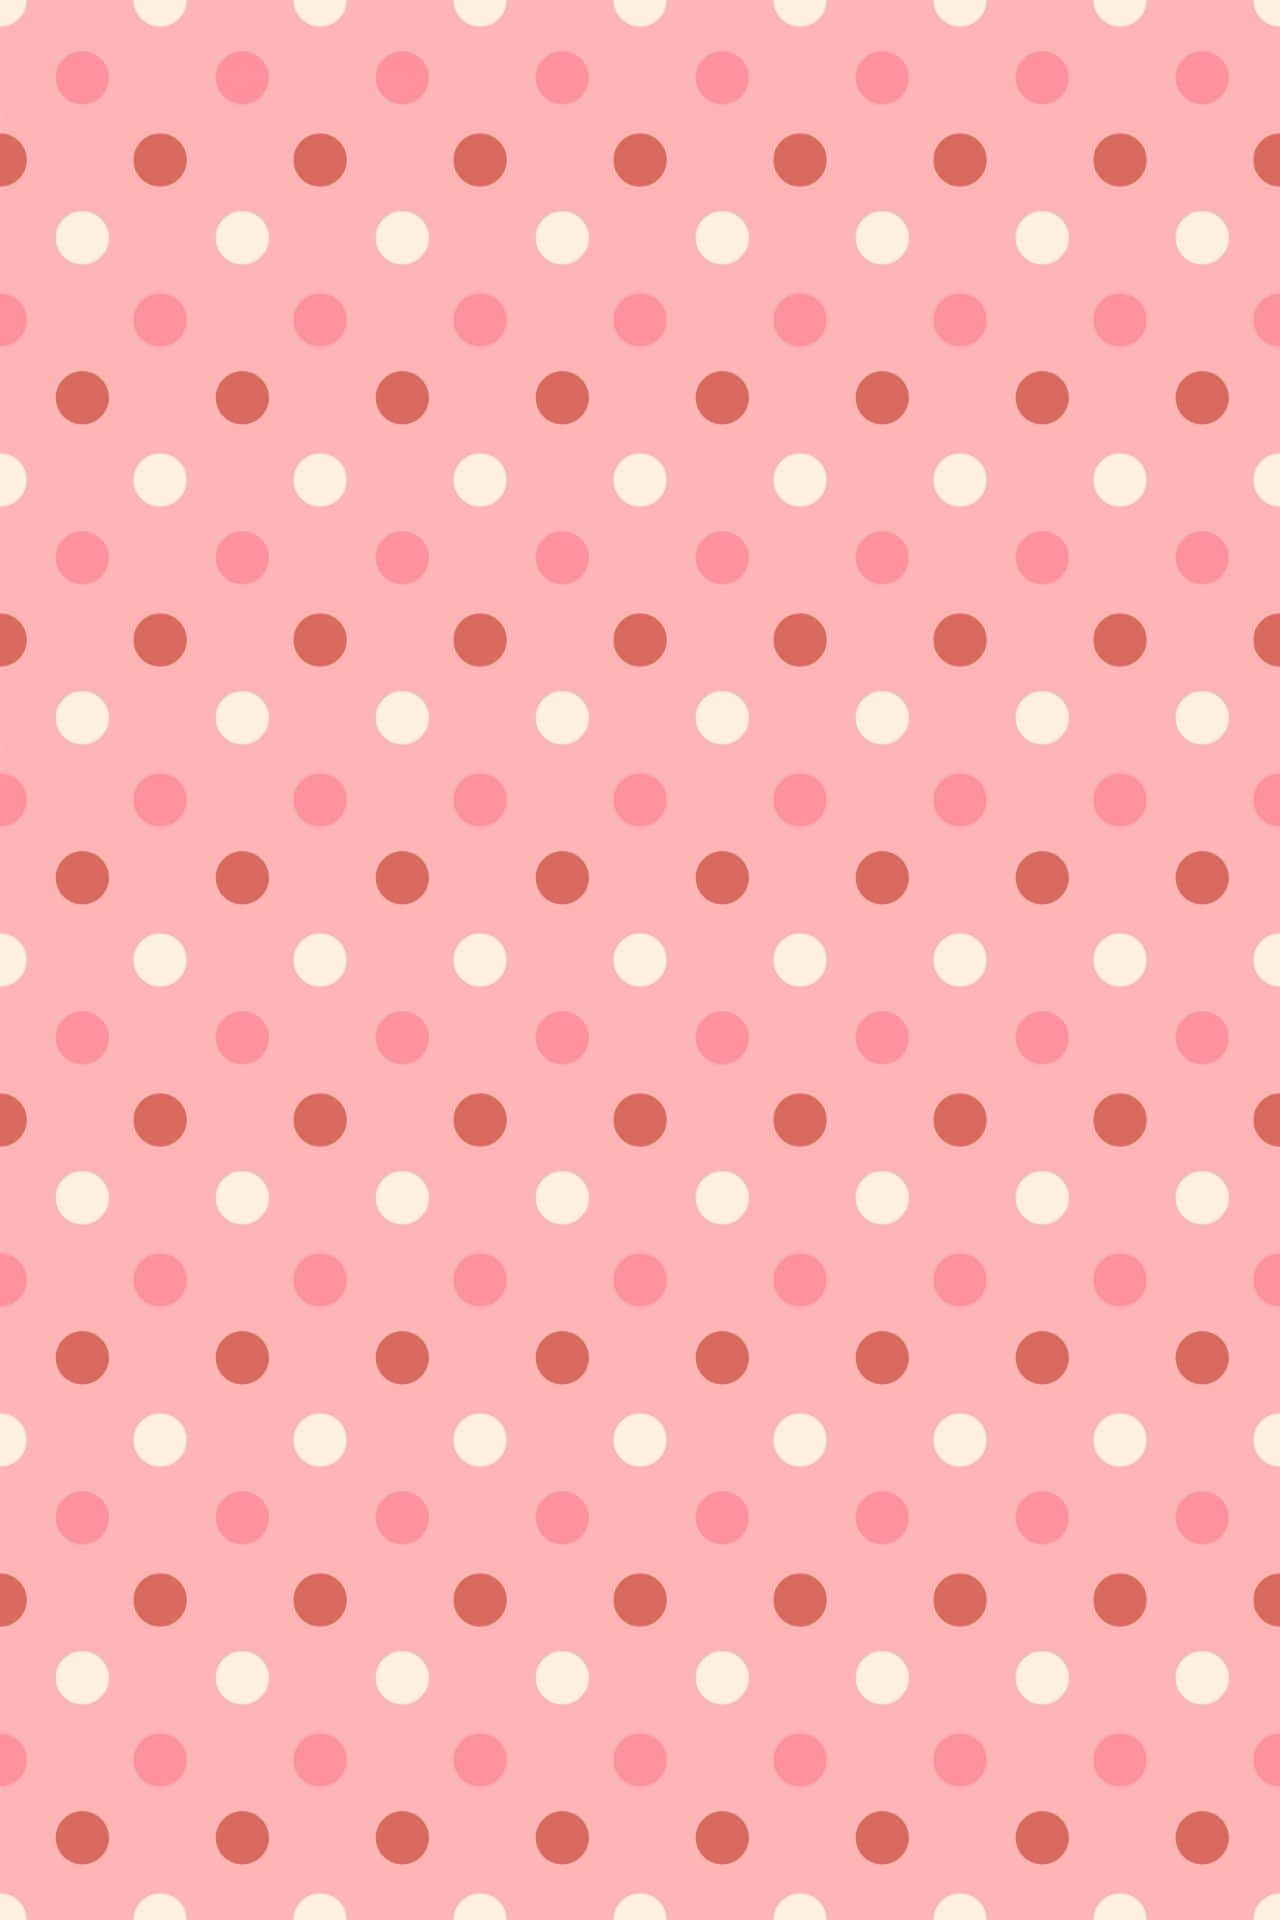 Forskelligenuancer Af Pink Og Hvide Prikker. Wallpaper